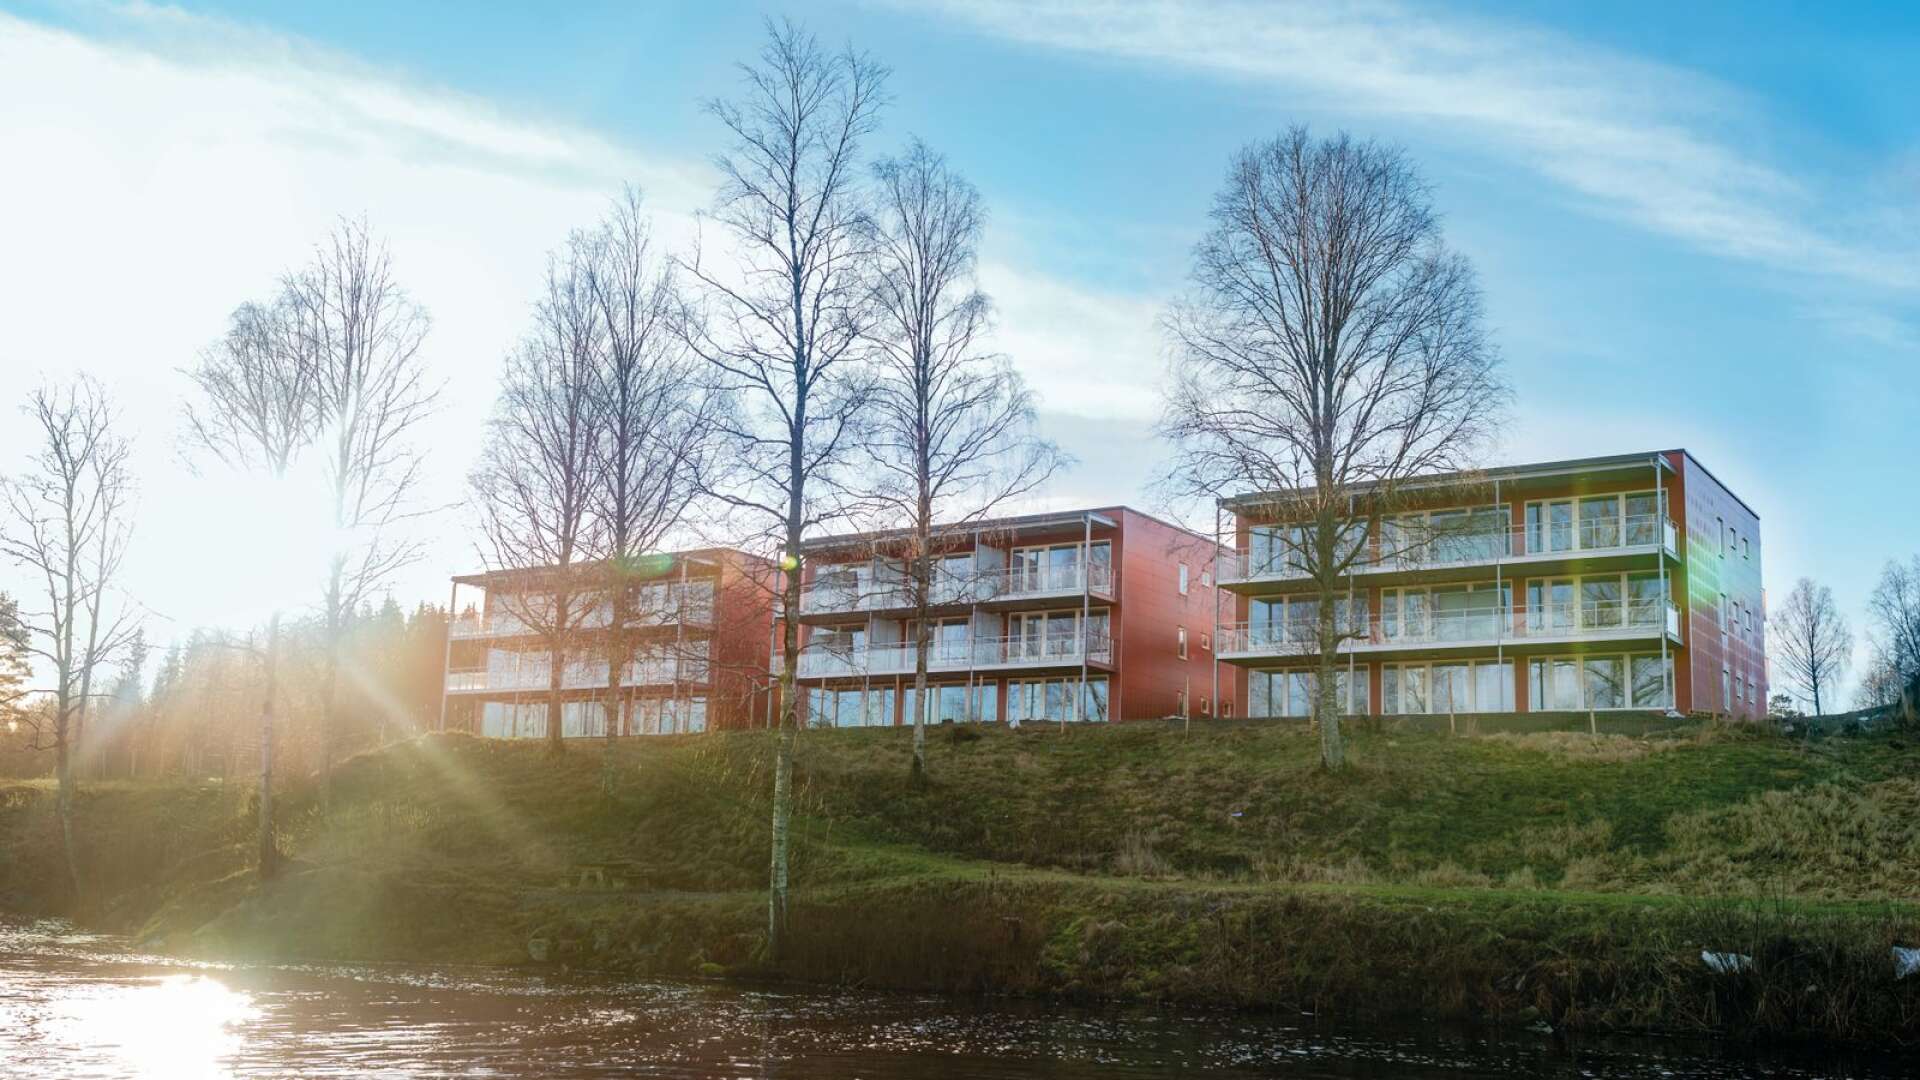 Här kommer det inom kort att flytta in människor, för snart är de nya kommunala lägenheterna i Töcksfors inflyttningsklara.